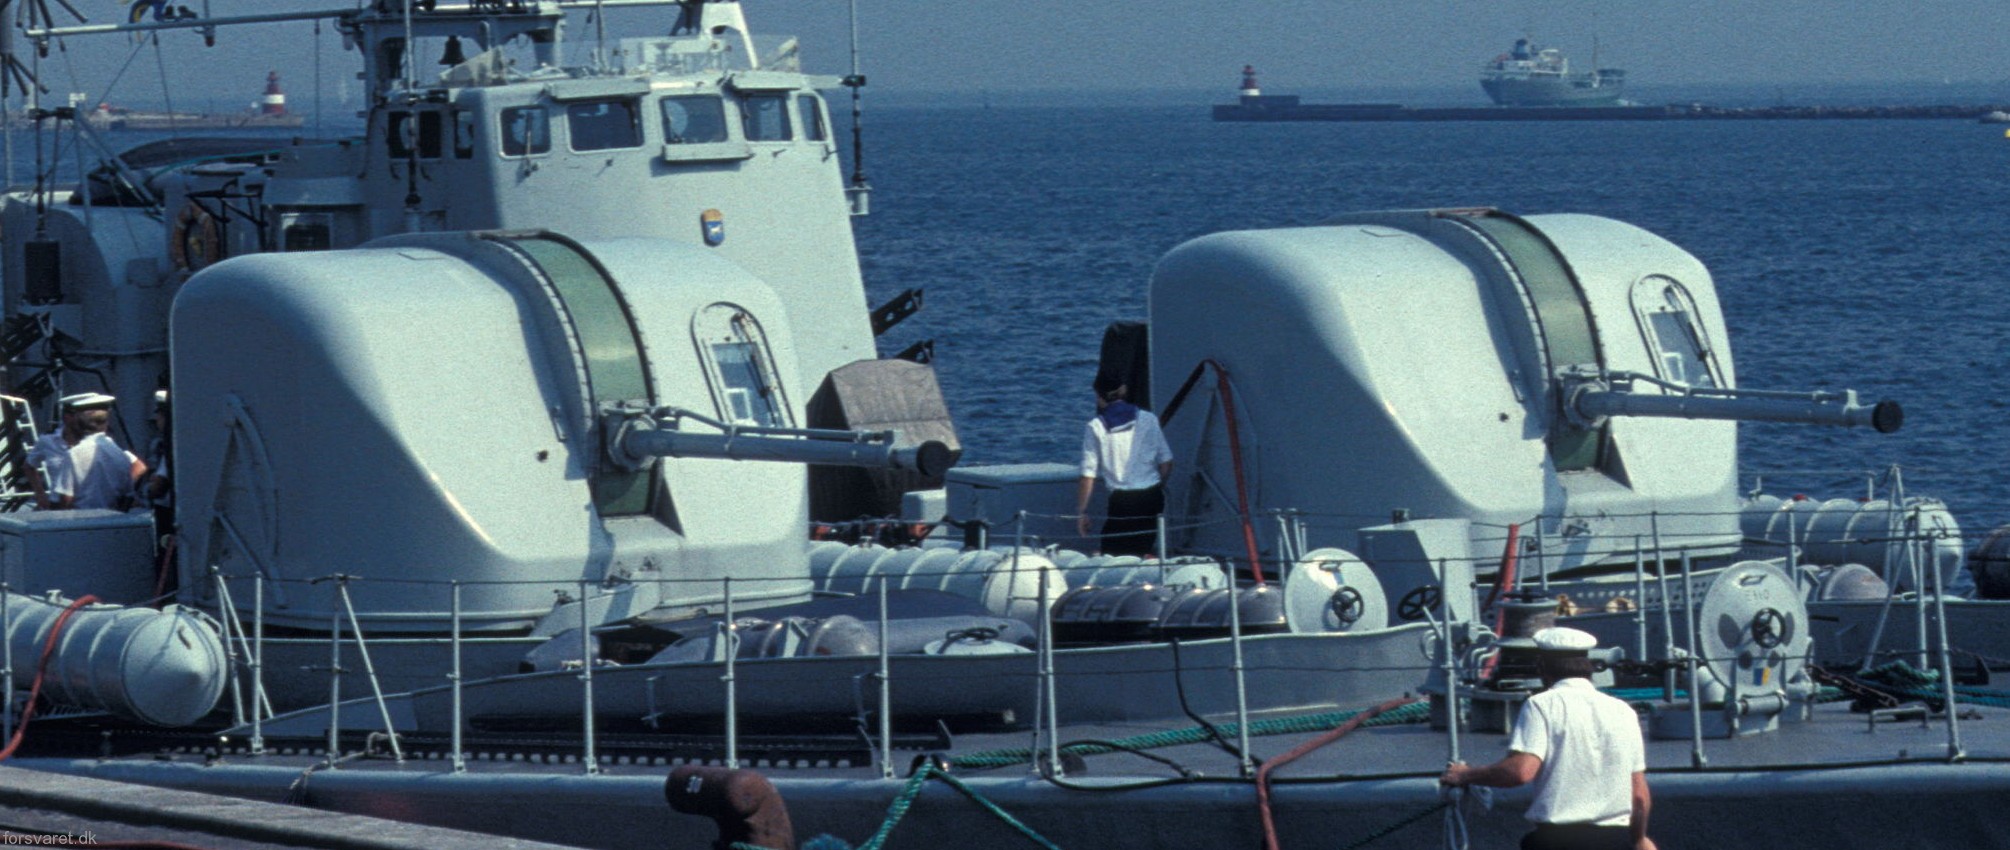 spica class fast attack craft torpedo boat vessel swedish navy svenska marinen bofors 57mm akan m/50c gun 02a